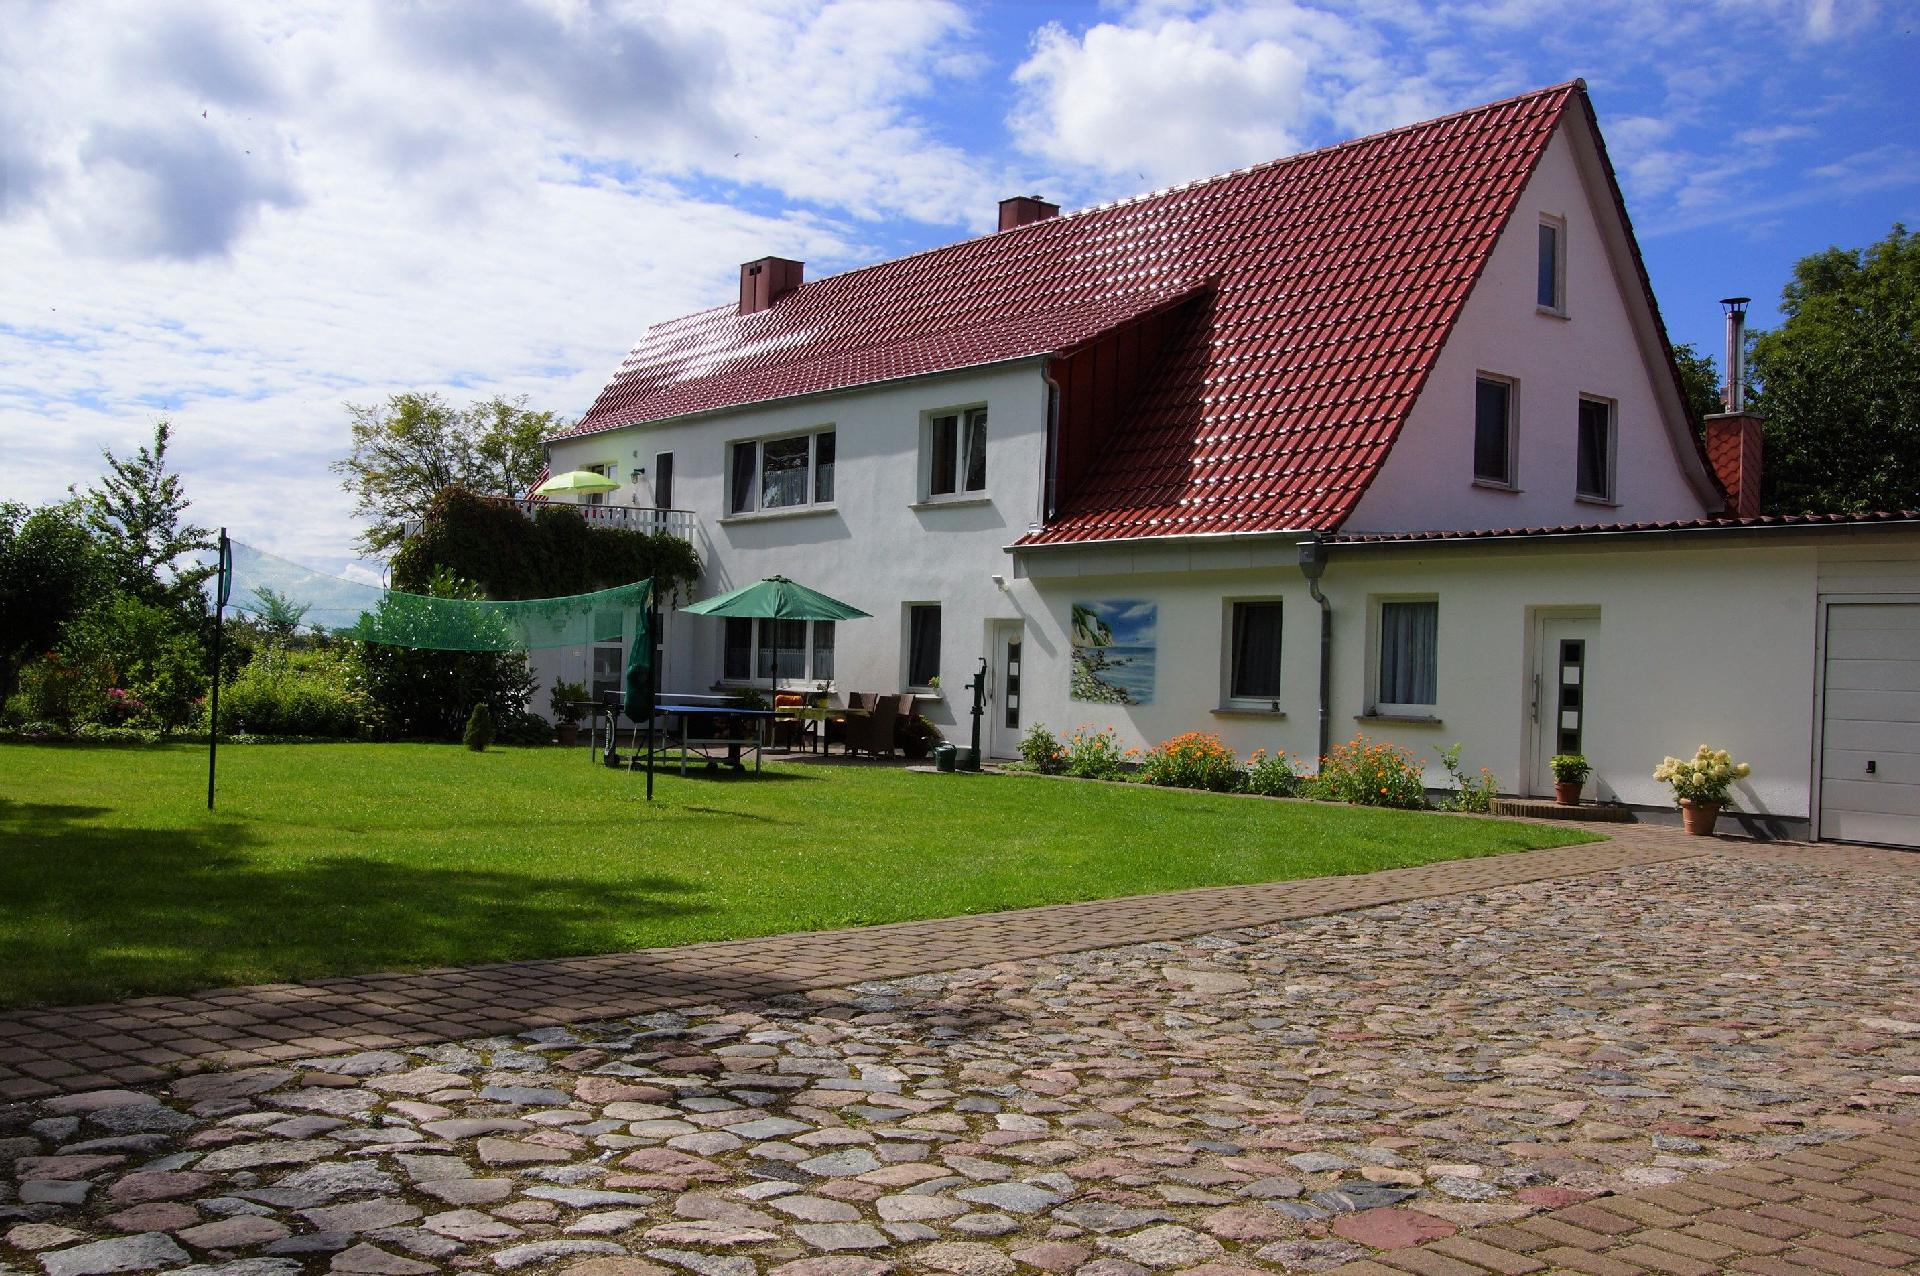 Schöne Wohnung bei Bergen auzf Rügen mit Ferienwohnung in Mecklenburg Vorpommern